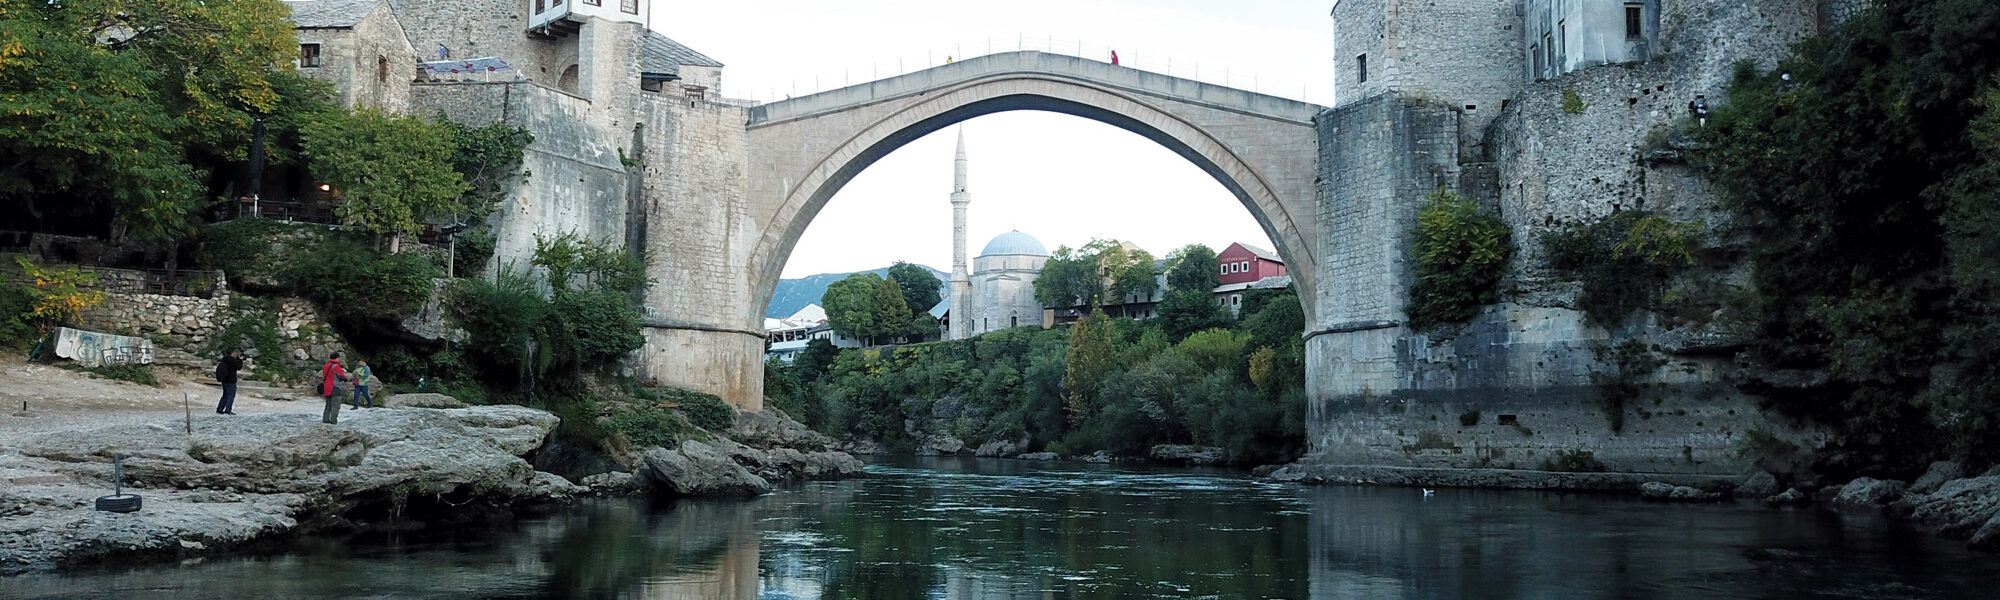 UNESCO Werelderfgoedlijst - Mostar - Bosnië & Herzegovina